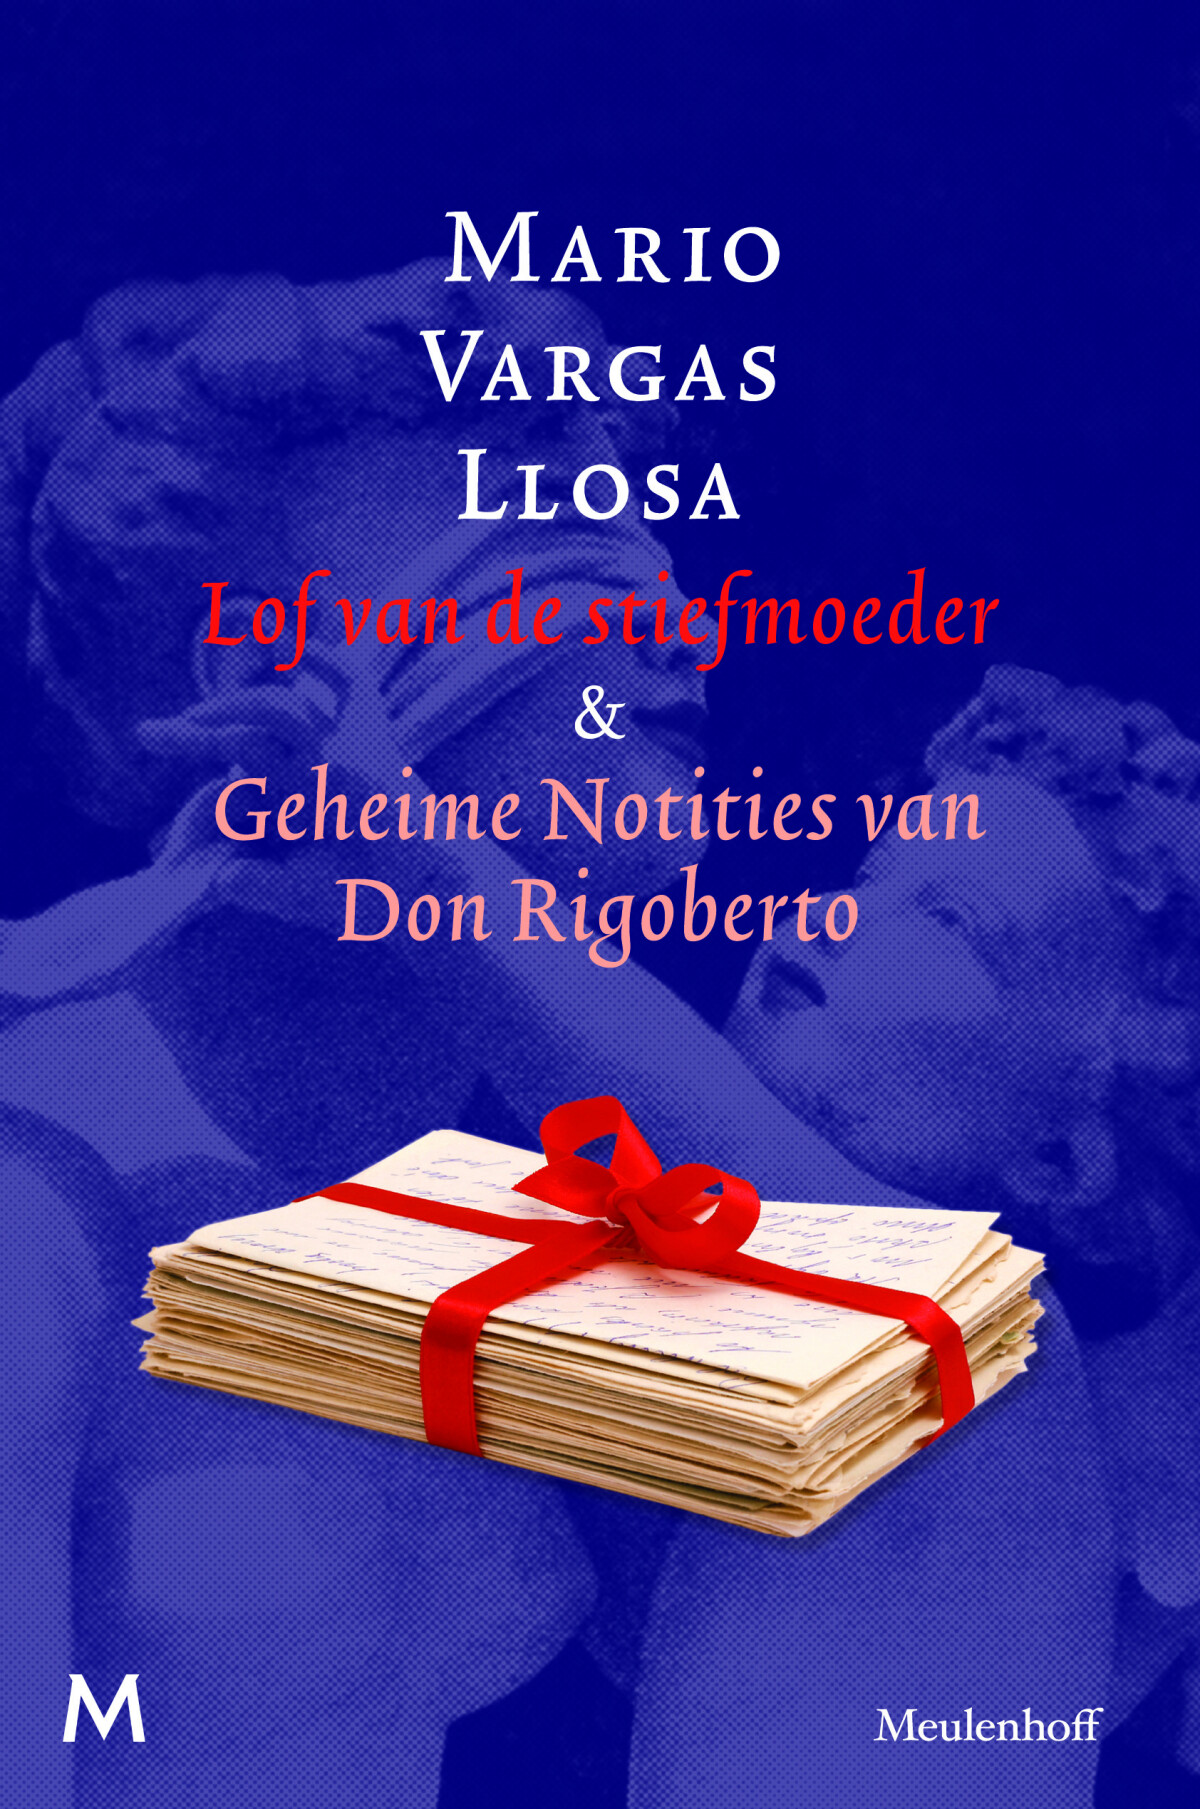 Lof van de stiefmoeder & Geheime notities van Don Rigoberto